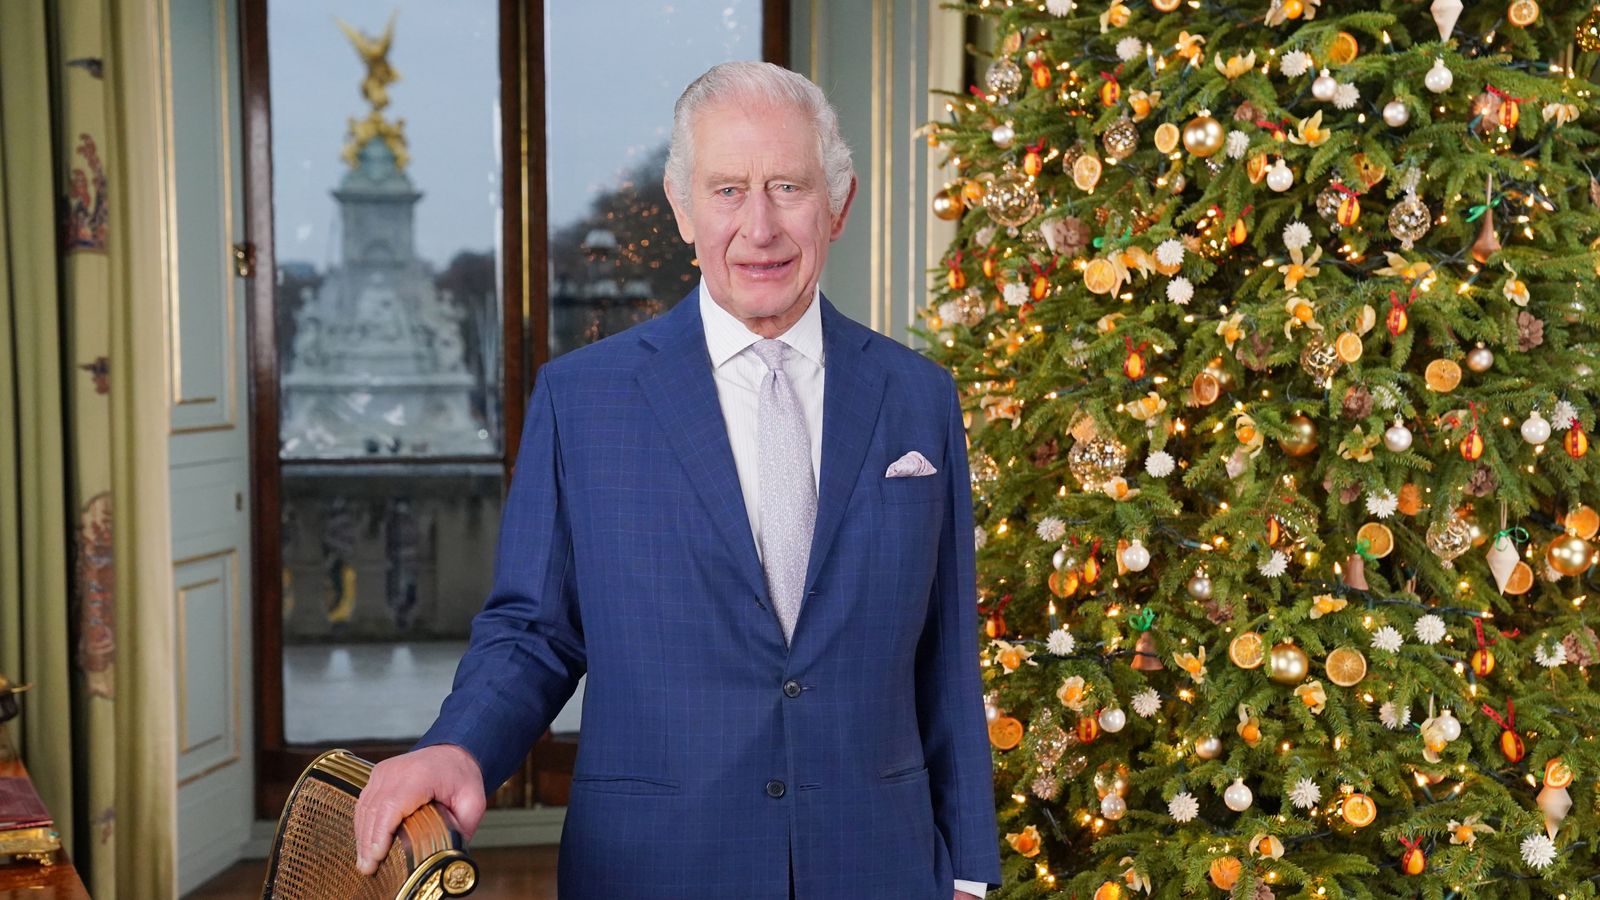 Фотография короля в комнате рядом с балконом Букингемского дворца была опубликована перед рождественским посланием |  Новости Великобритании